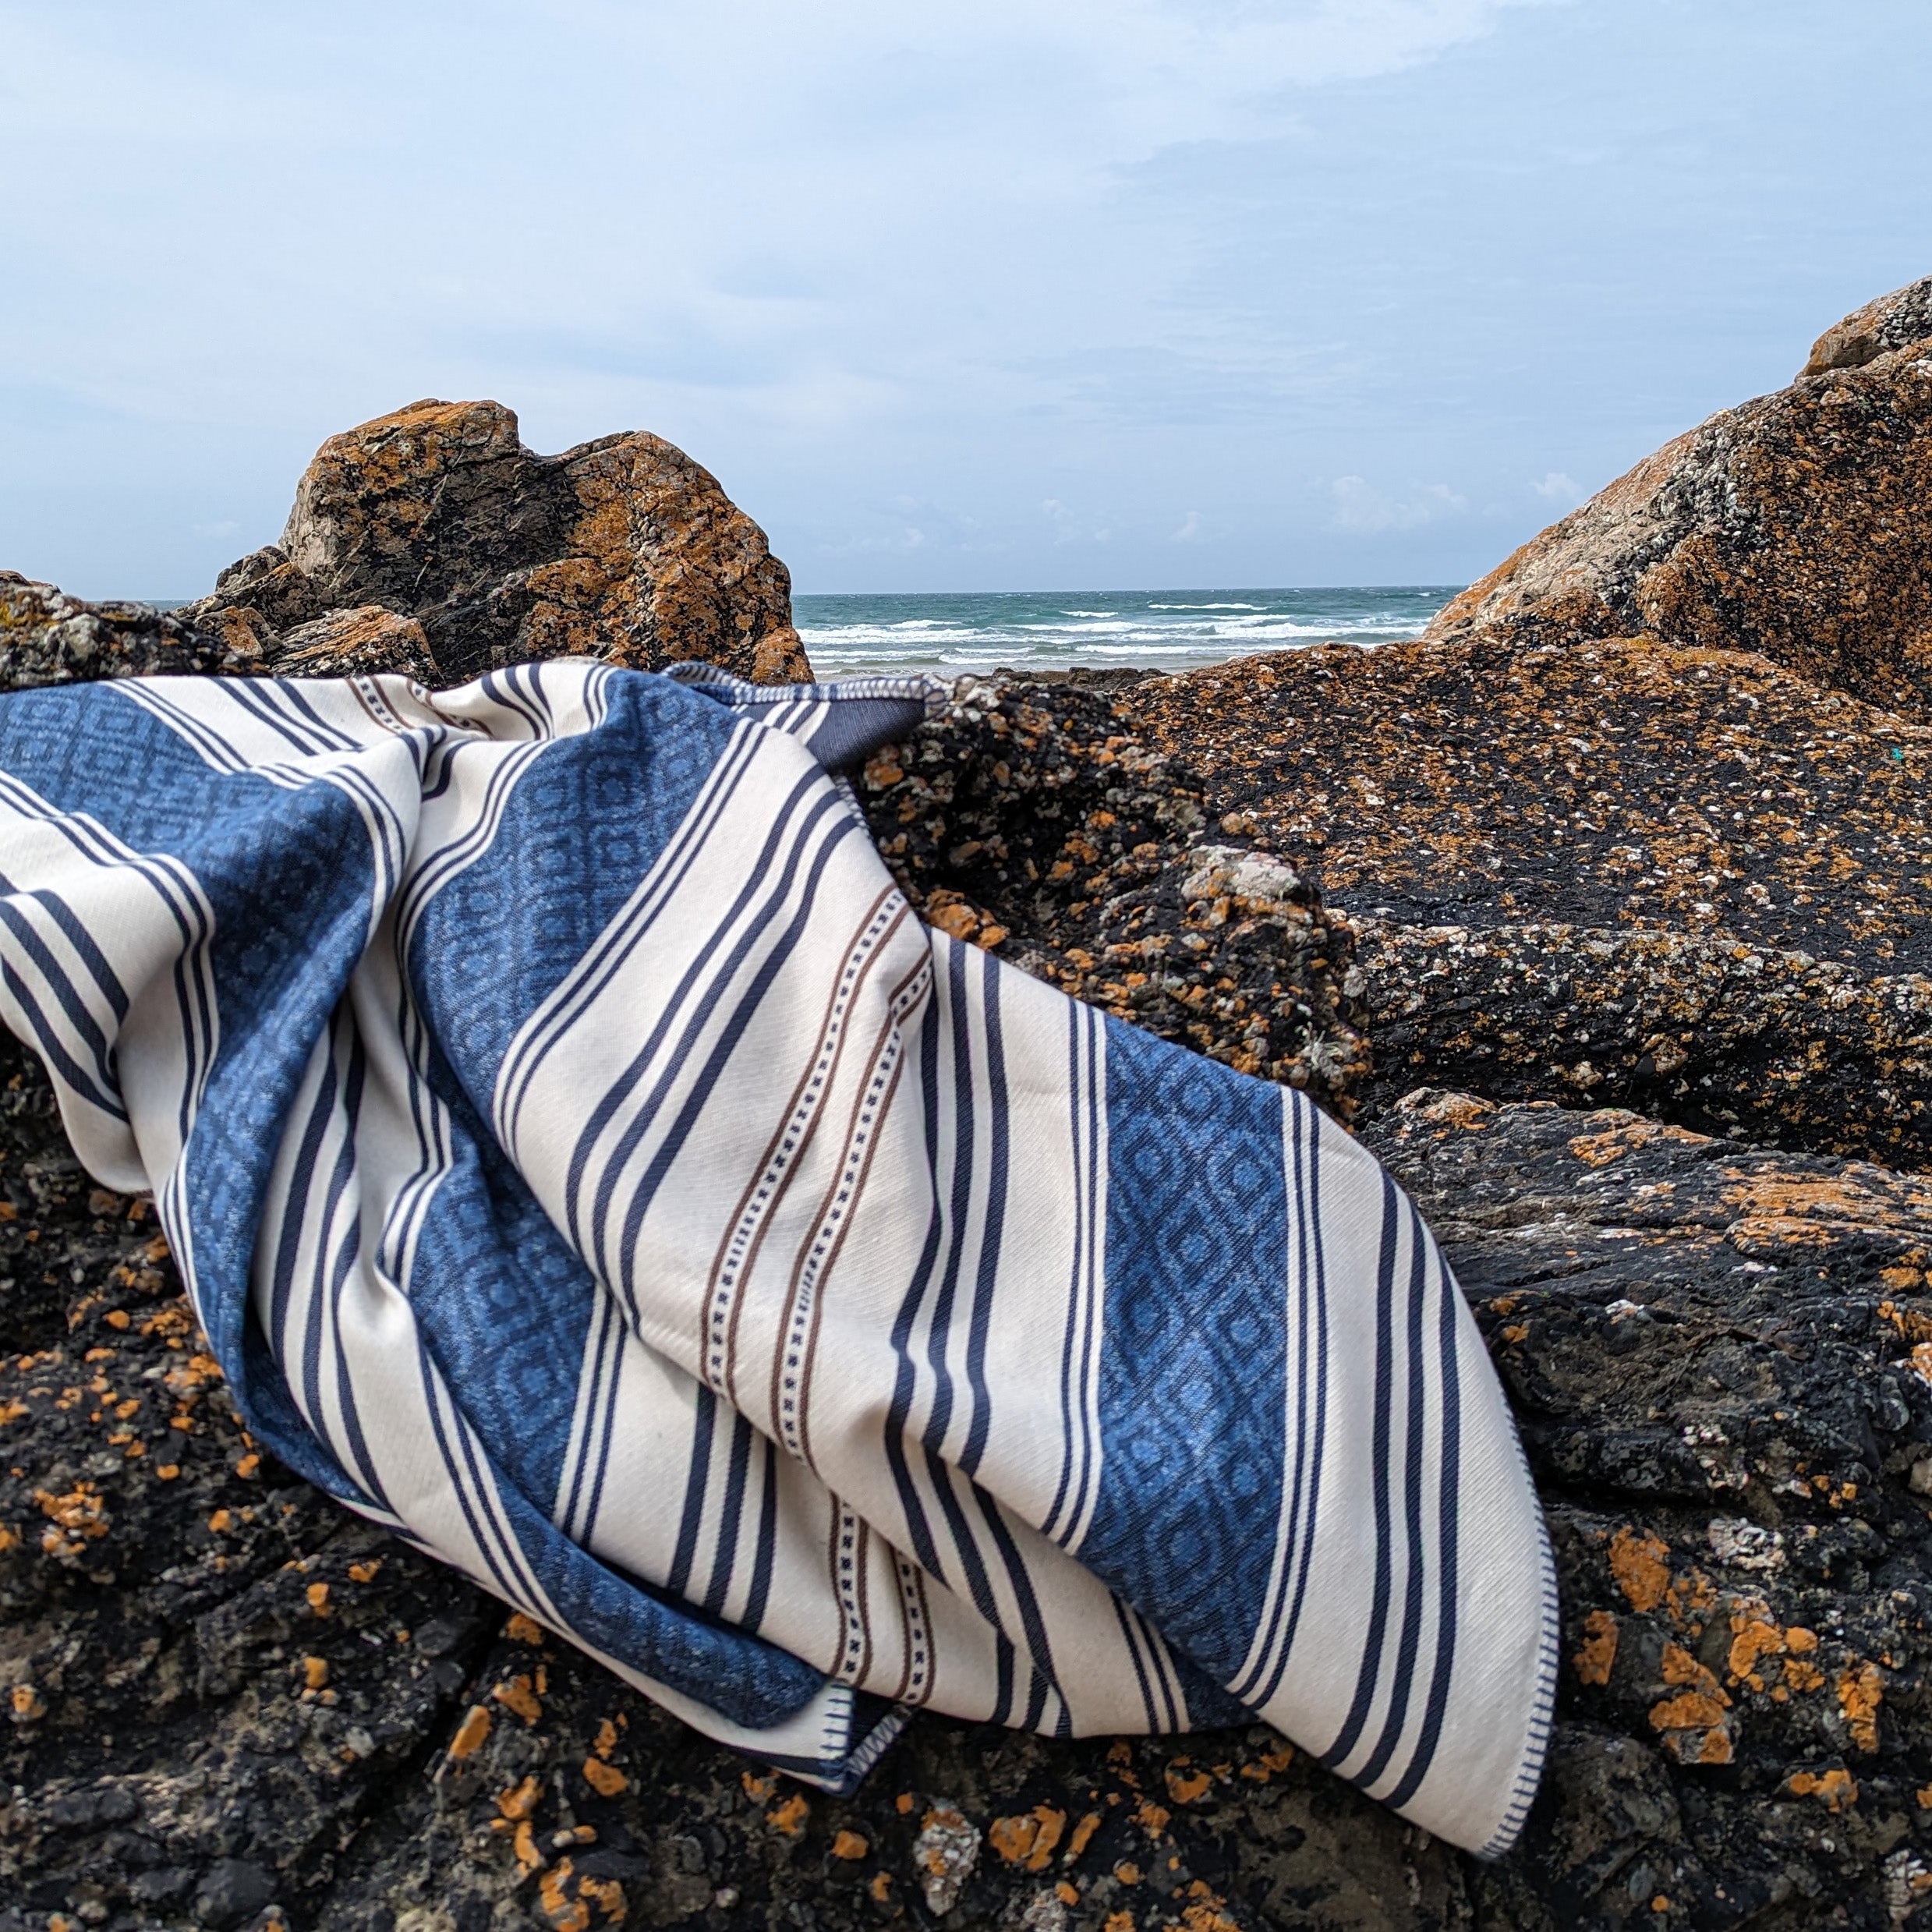 The Ladye Bay Striped Blanket